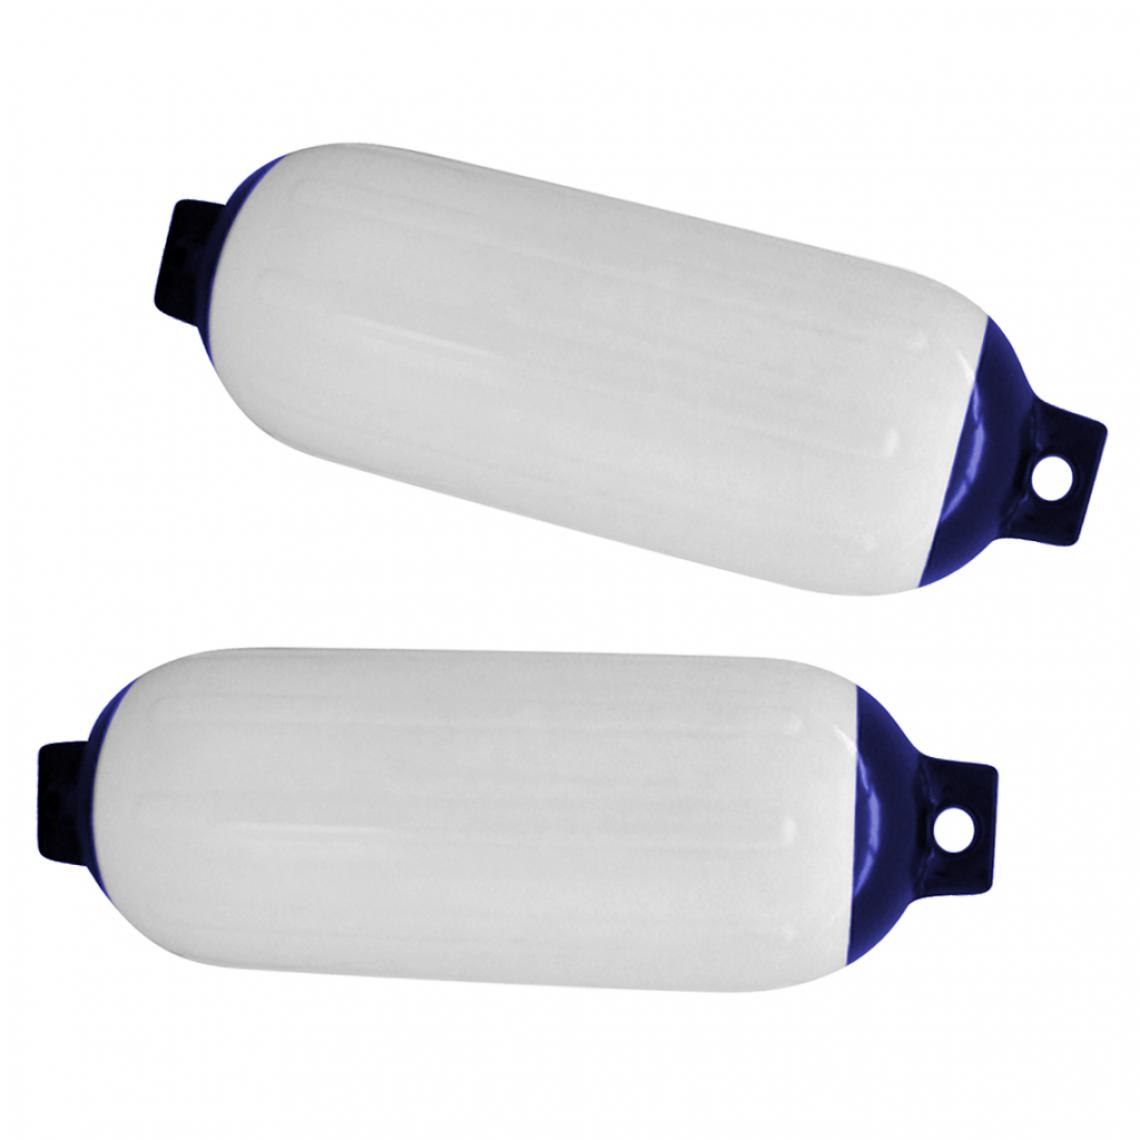 marque generique - 2pcs Bateau Marin Fender Premium PVC Pare-chocs Dock Shield Protection - Bleu Blanc - Accessoires et Pièces Détachées